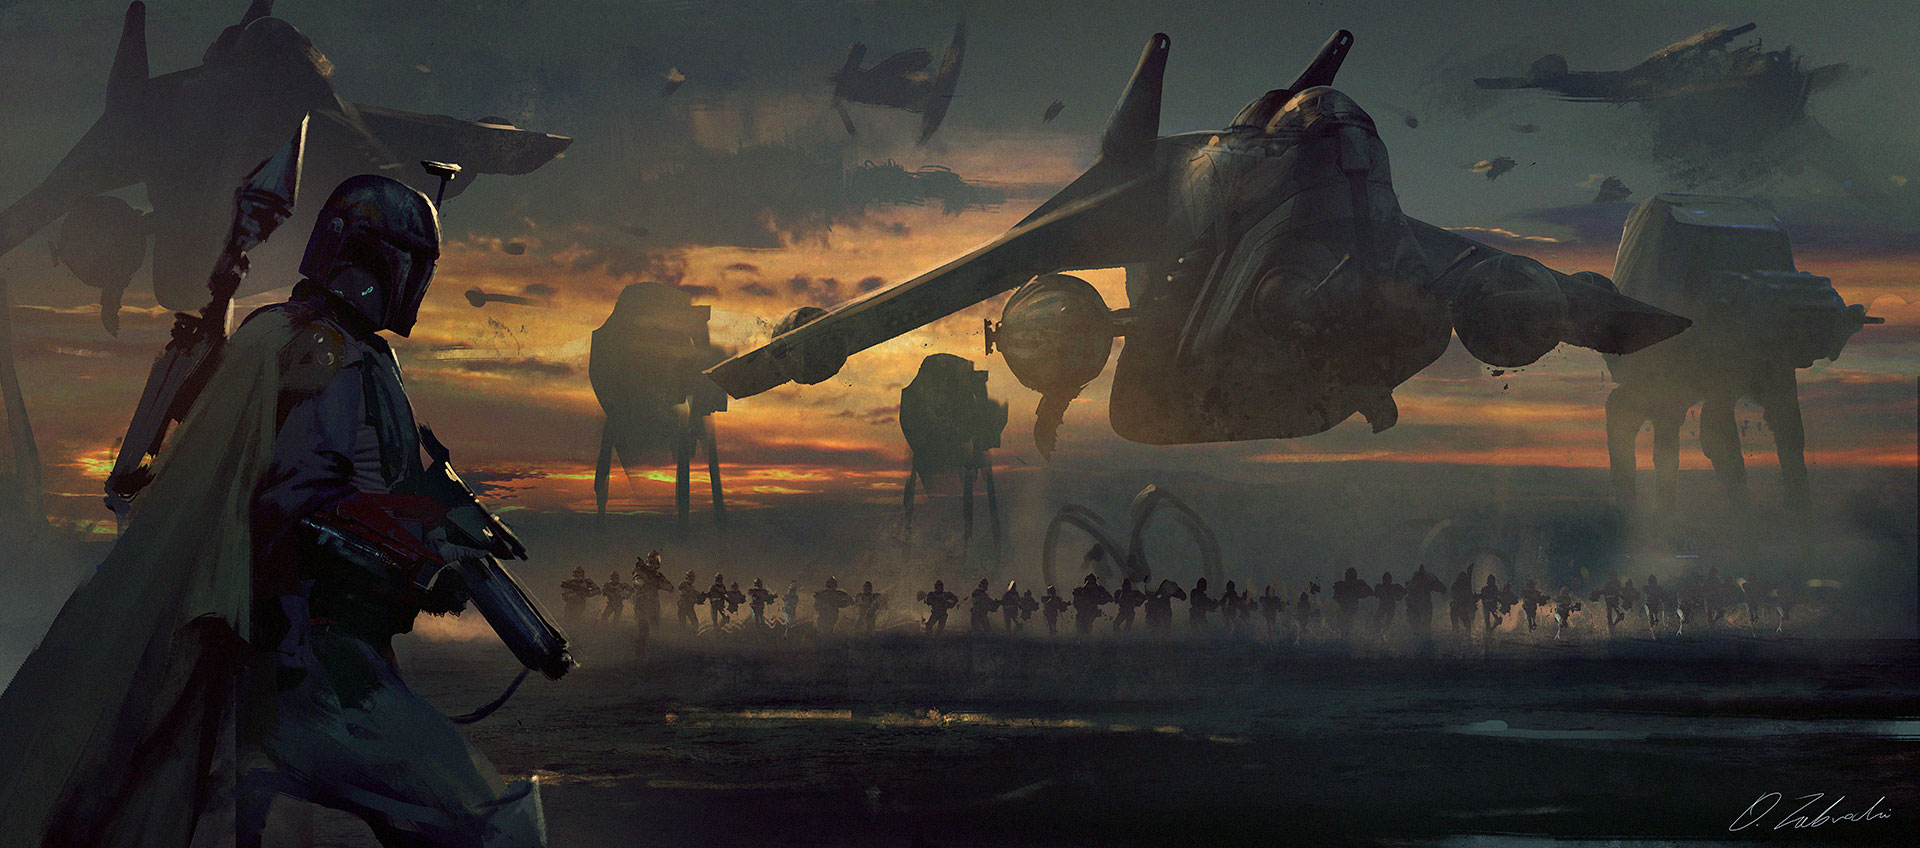 Boba Fett Star Wars Story - HD Wallpaper 